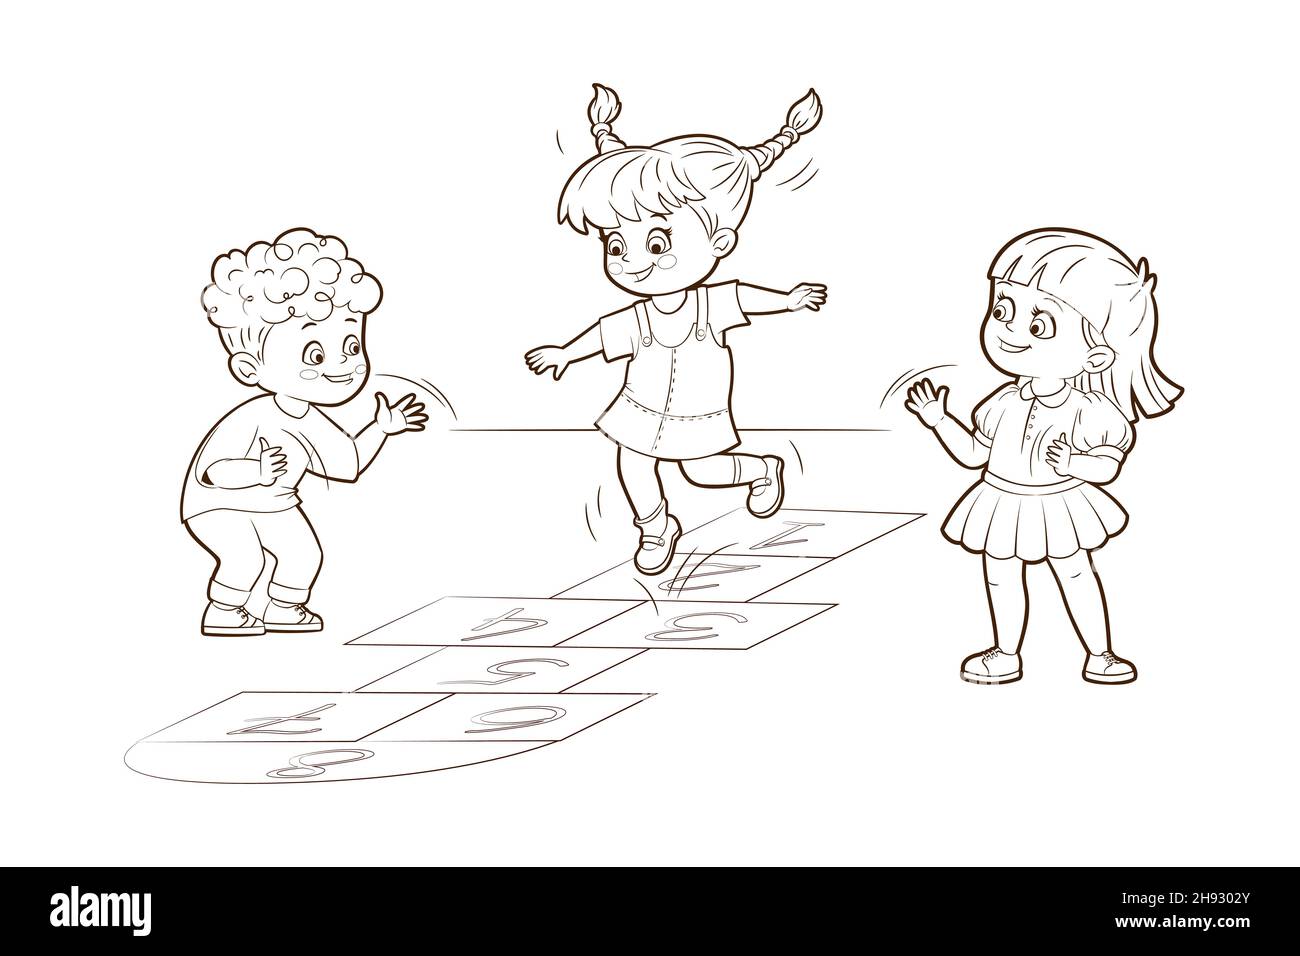 Livre de coloriage deux filles et un garçon sautent à jouer le hopscotch.Illustration vectorielle de style dessin animé, lignes noires et blanches Illustration de Vecteur